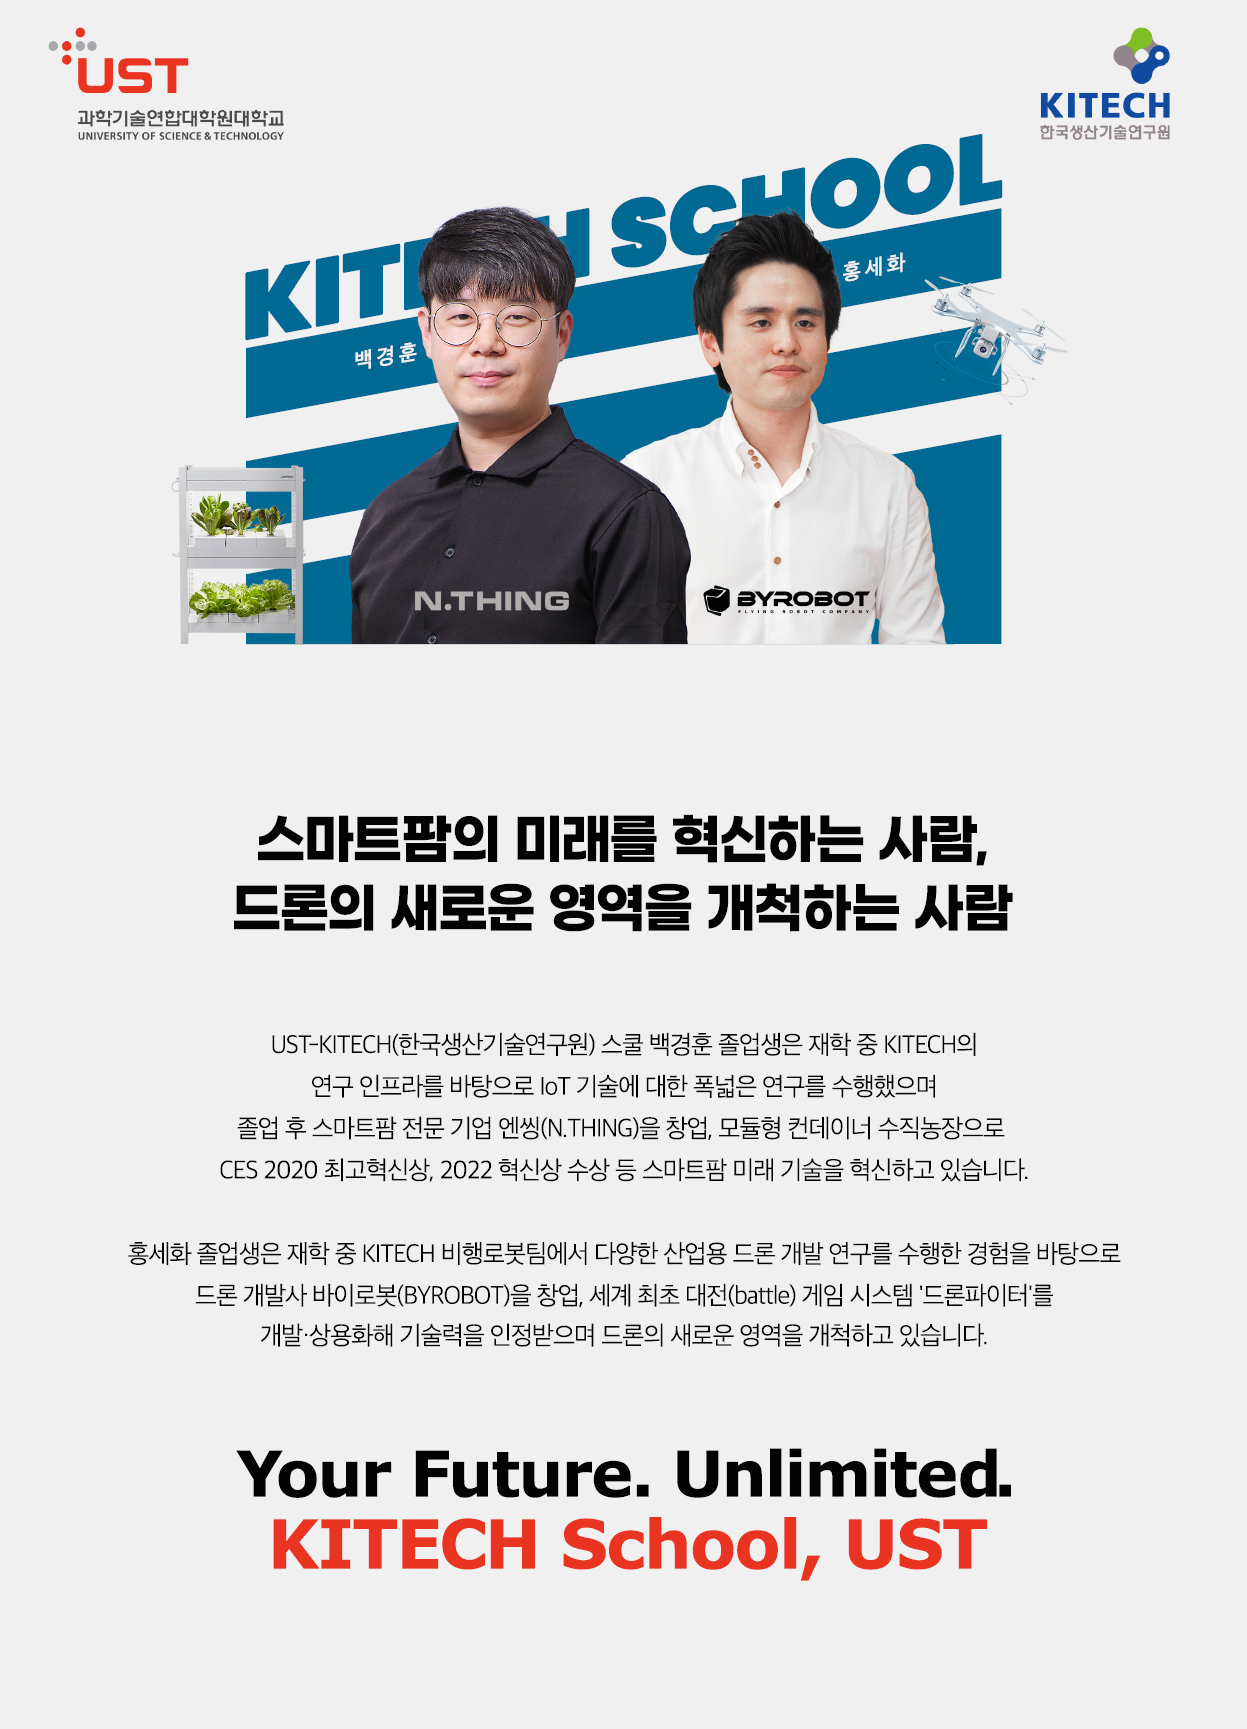 한국생산기술연구원 스쿨 포스터로 자세한내용은 하단에 위치해있습니다.